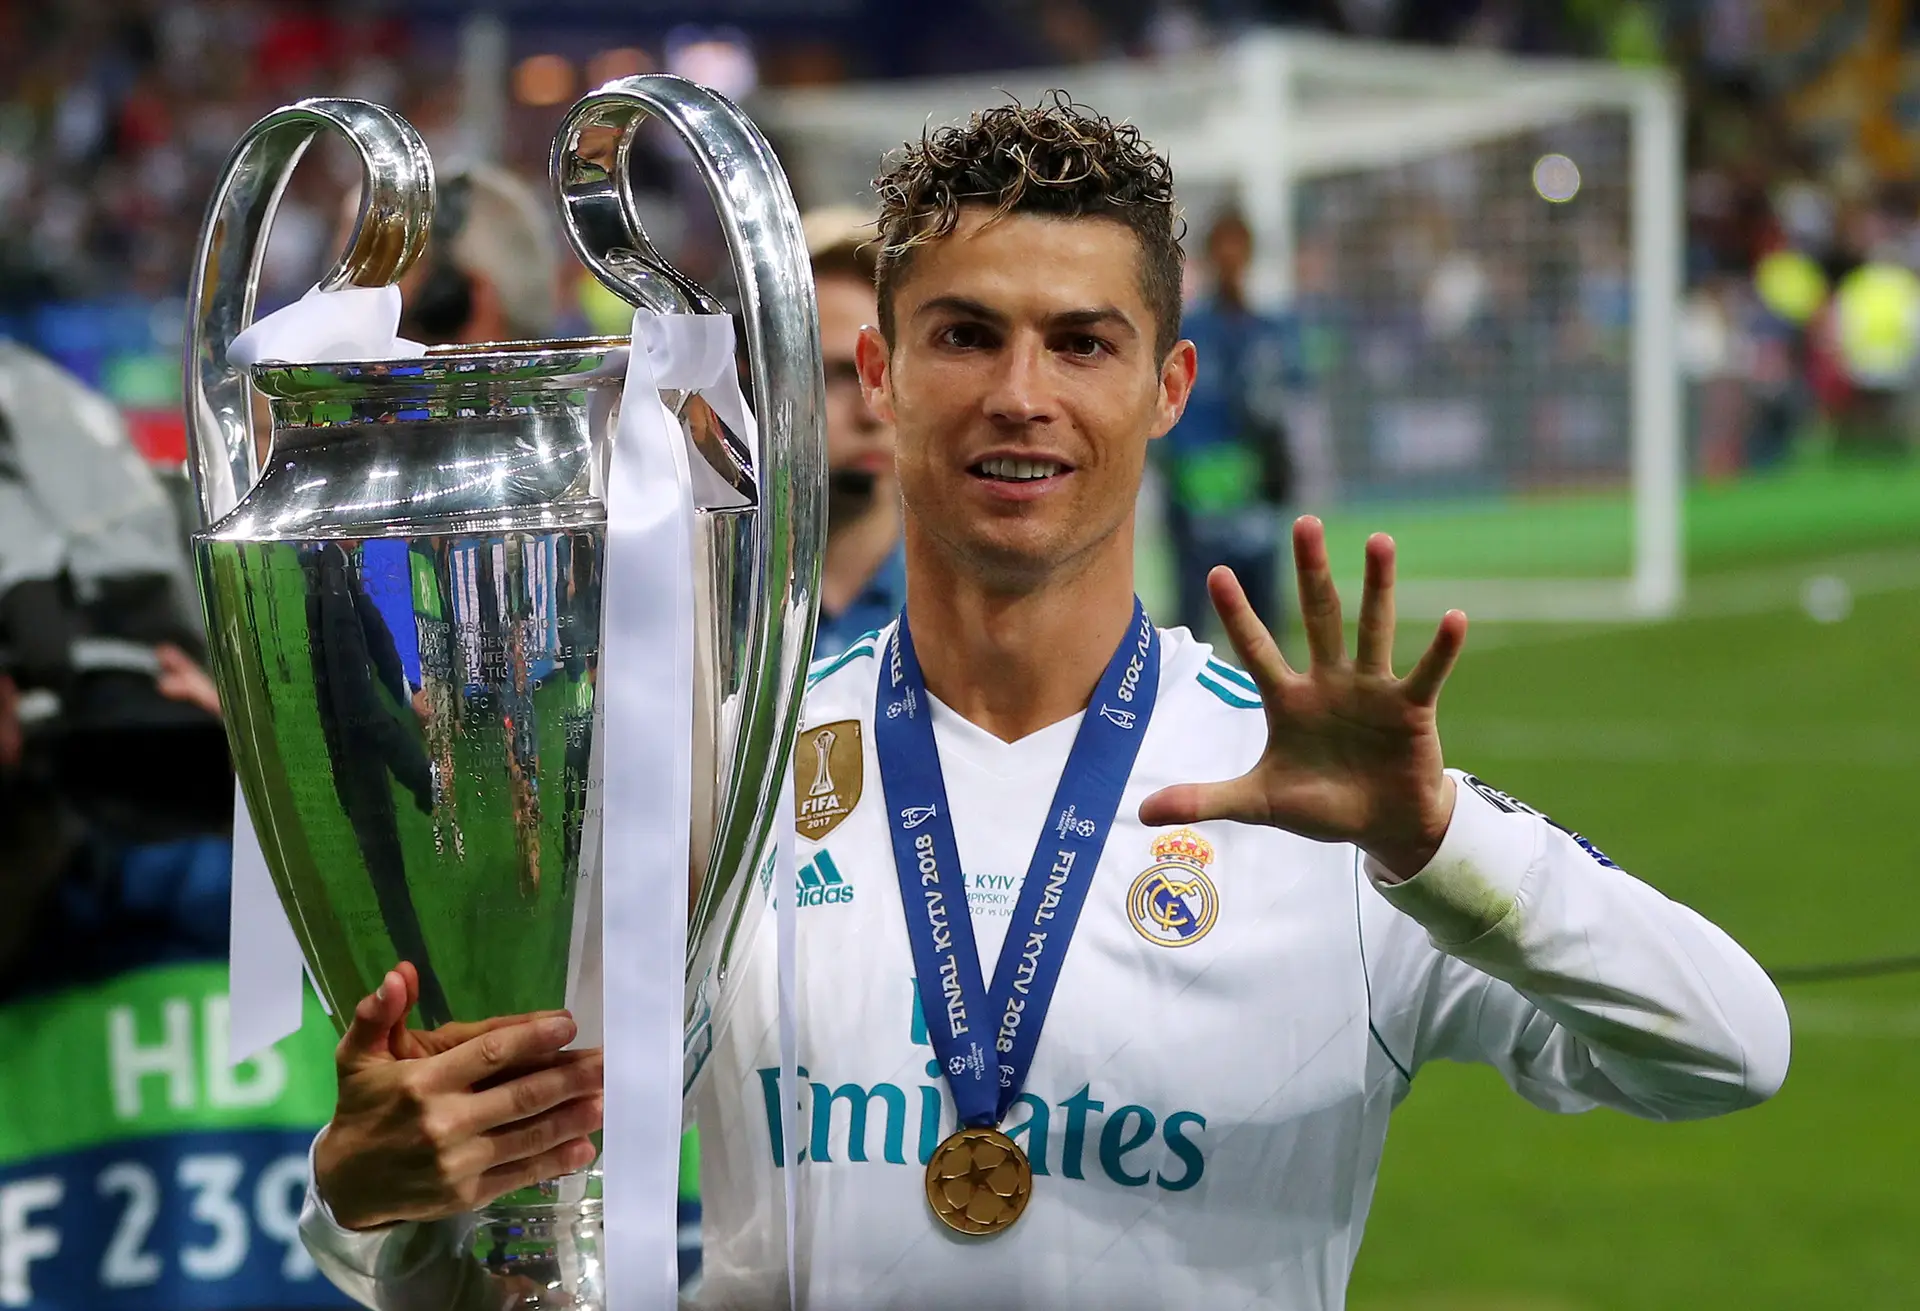 Fifa 17: Cristiano Ronaldo lidera lista dos 10 jogadores com